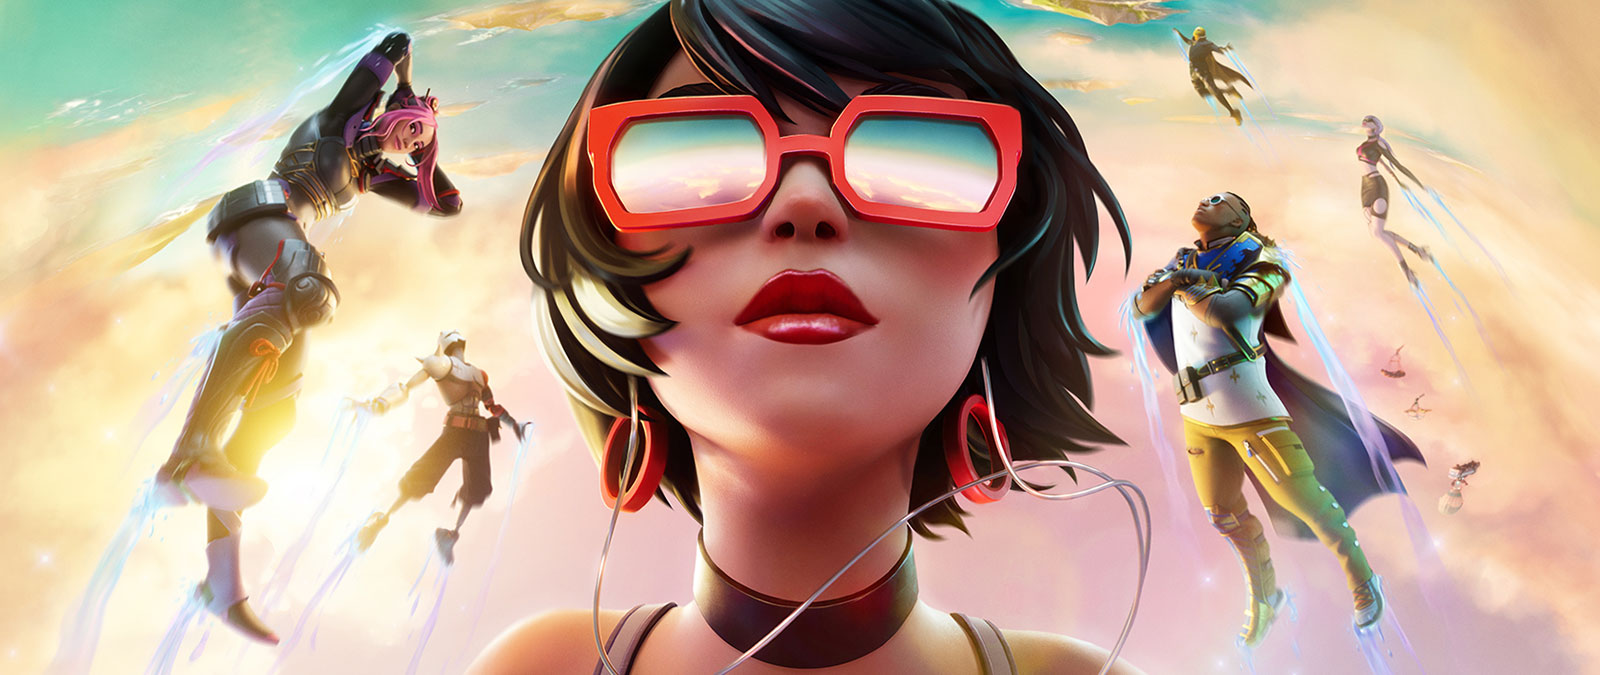 Девушка в красных солнцезащитных очках плывет в облаках с другими персонажами на фоне неба пастельных тонов.